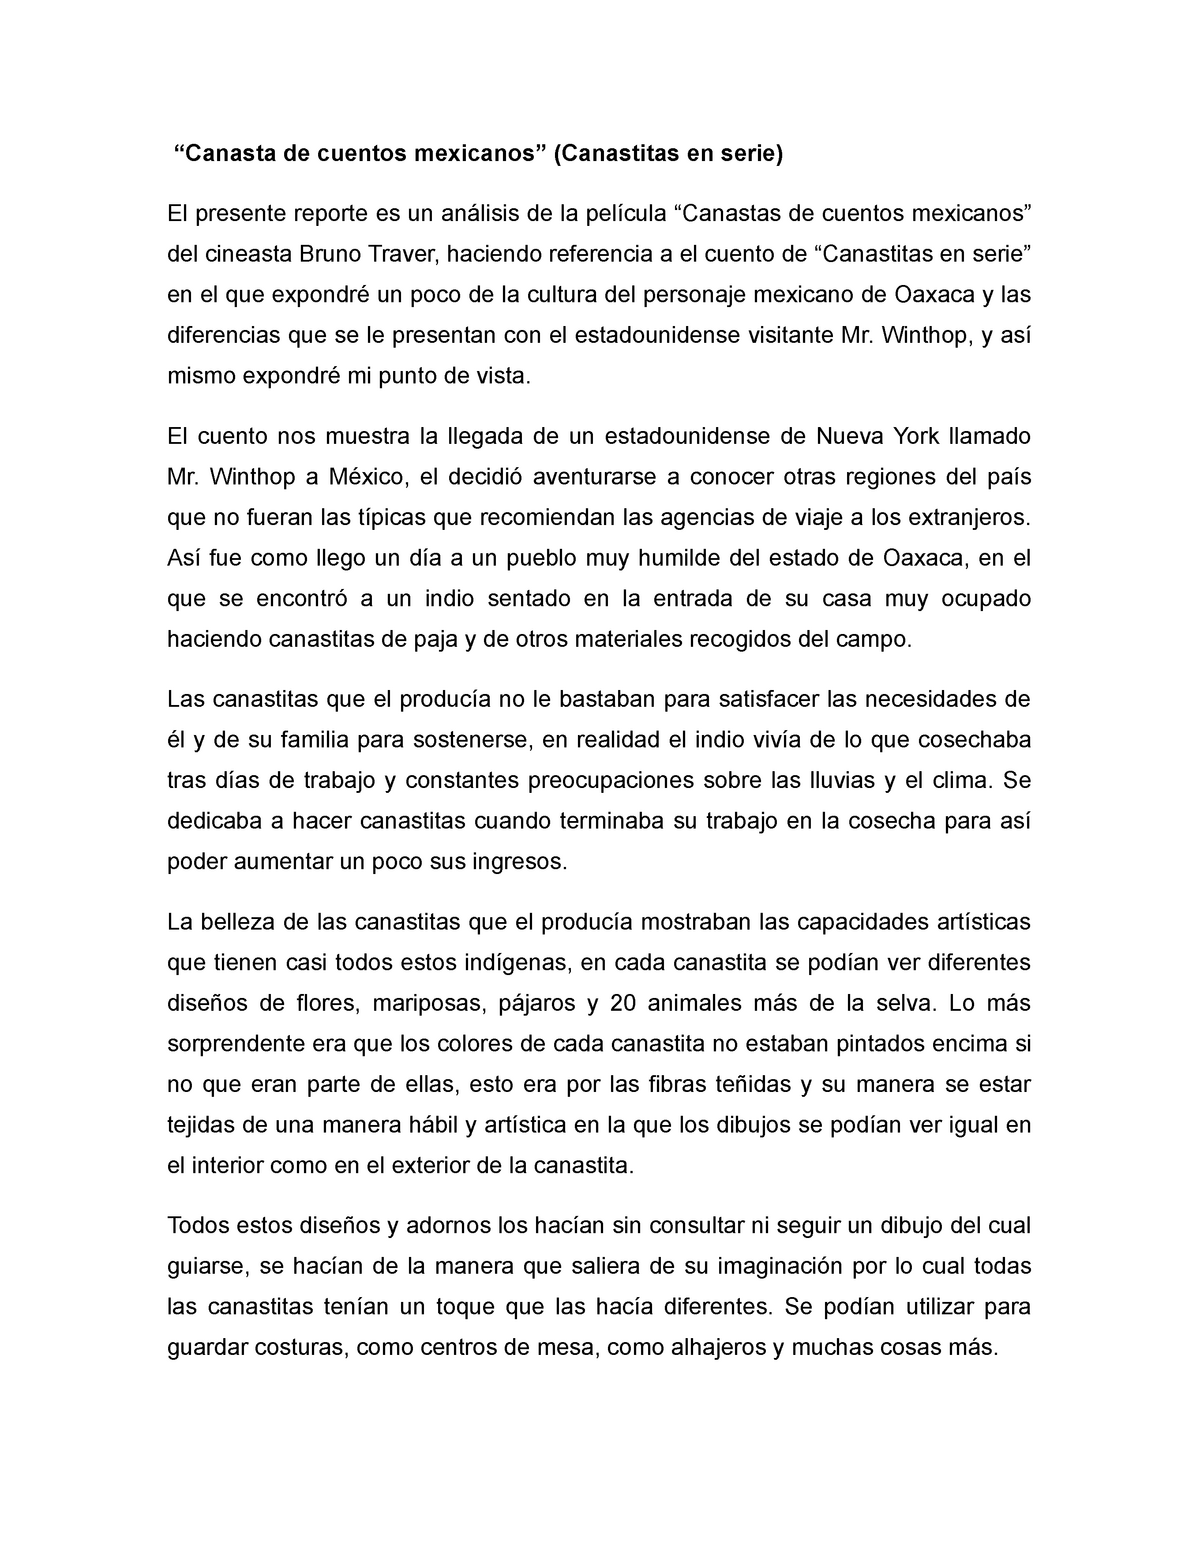 Artes - Evidencia 2 - “Canasta de cuentos mexicanos” (Canastitas en serie)  El presente reporte es un - Studocu